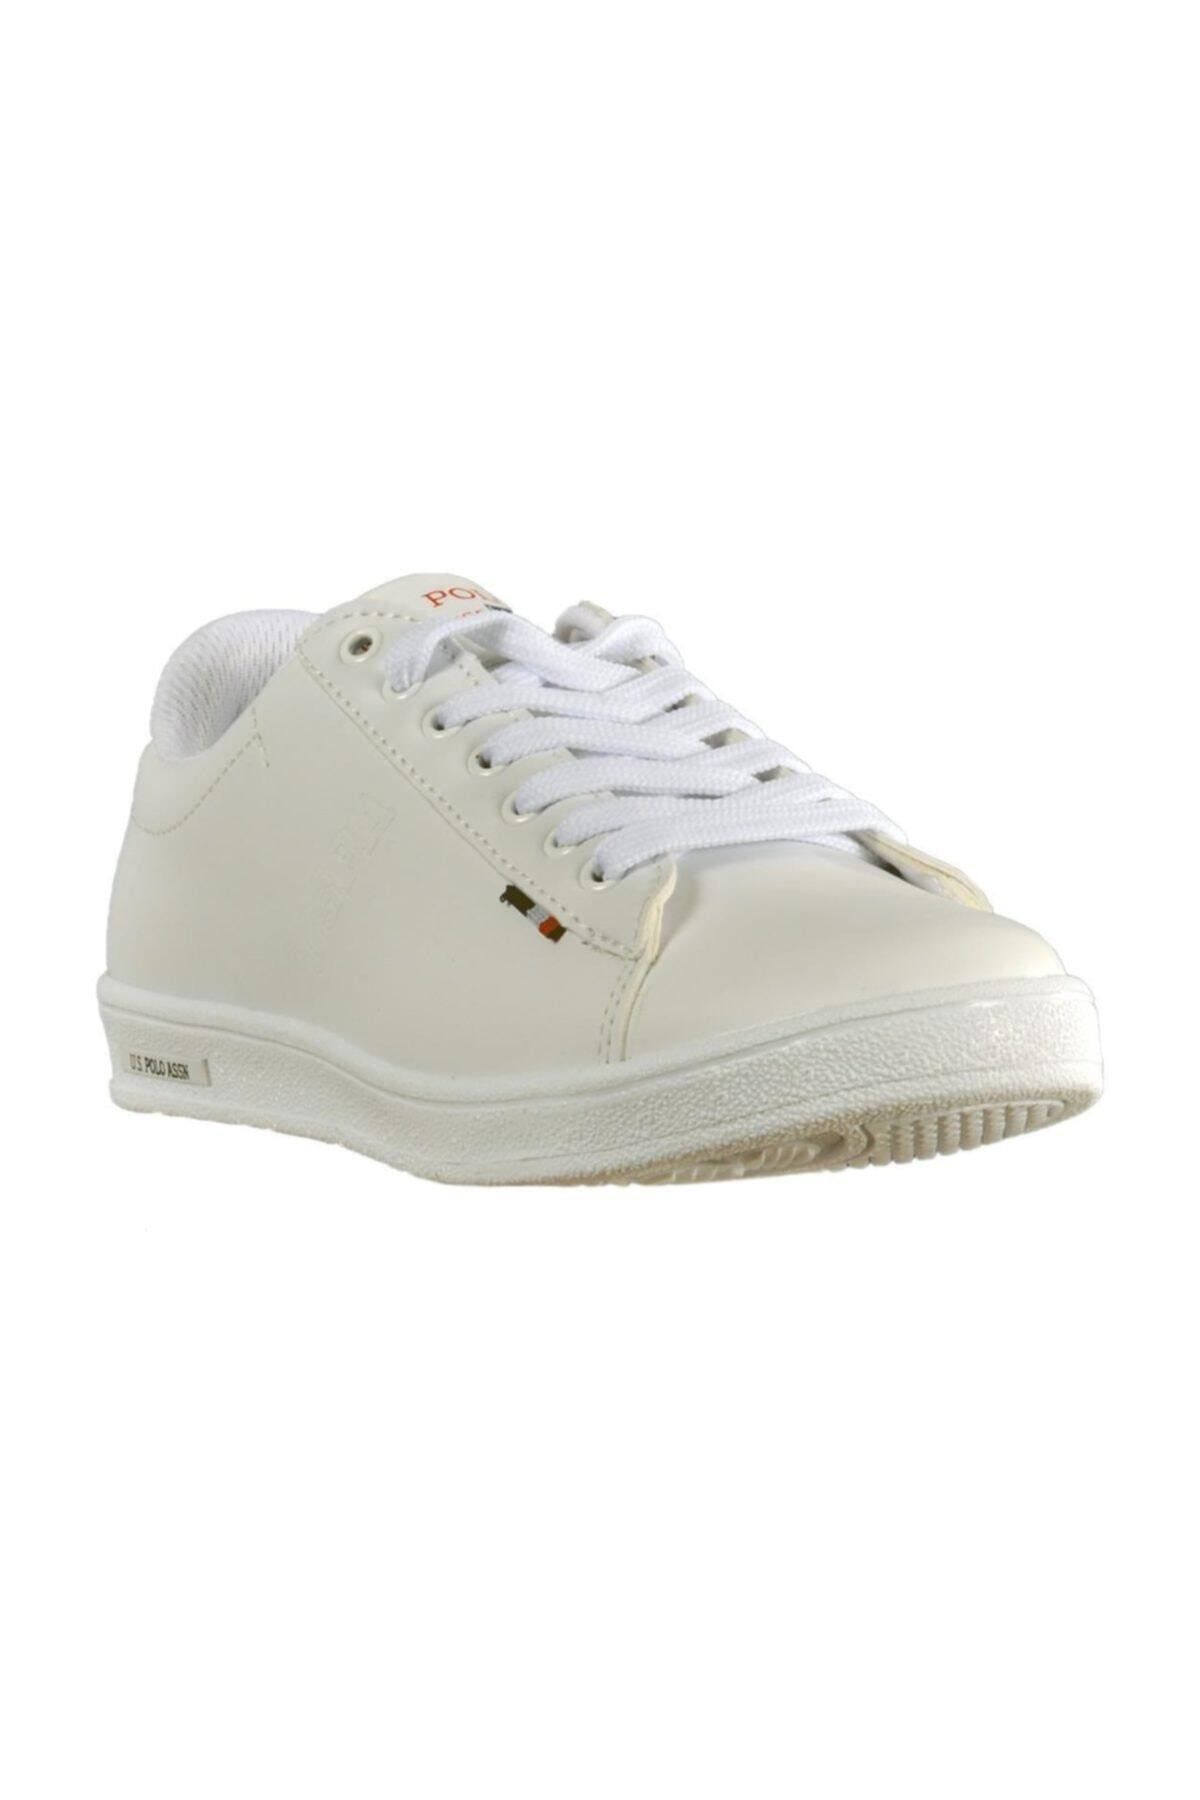 U.S. Polo Assn. FRANCO 9PR Beyaz Kadın Sneaker Ayakkabı 100417867